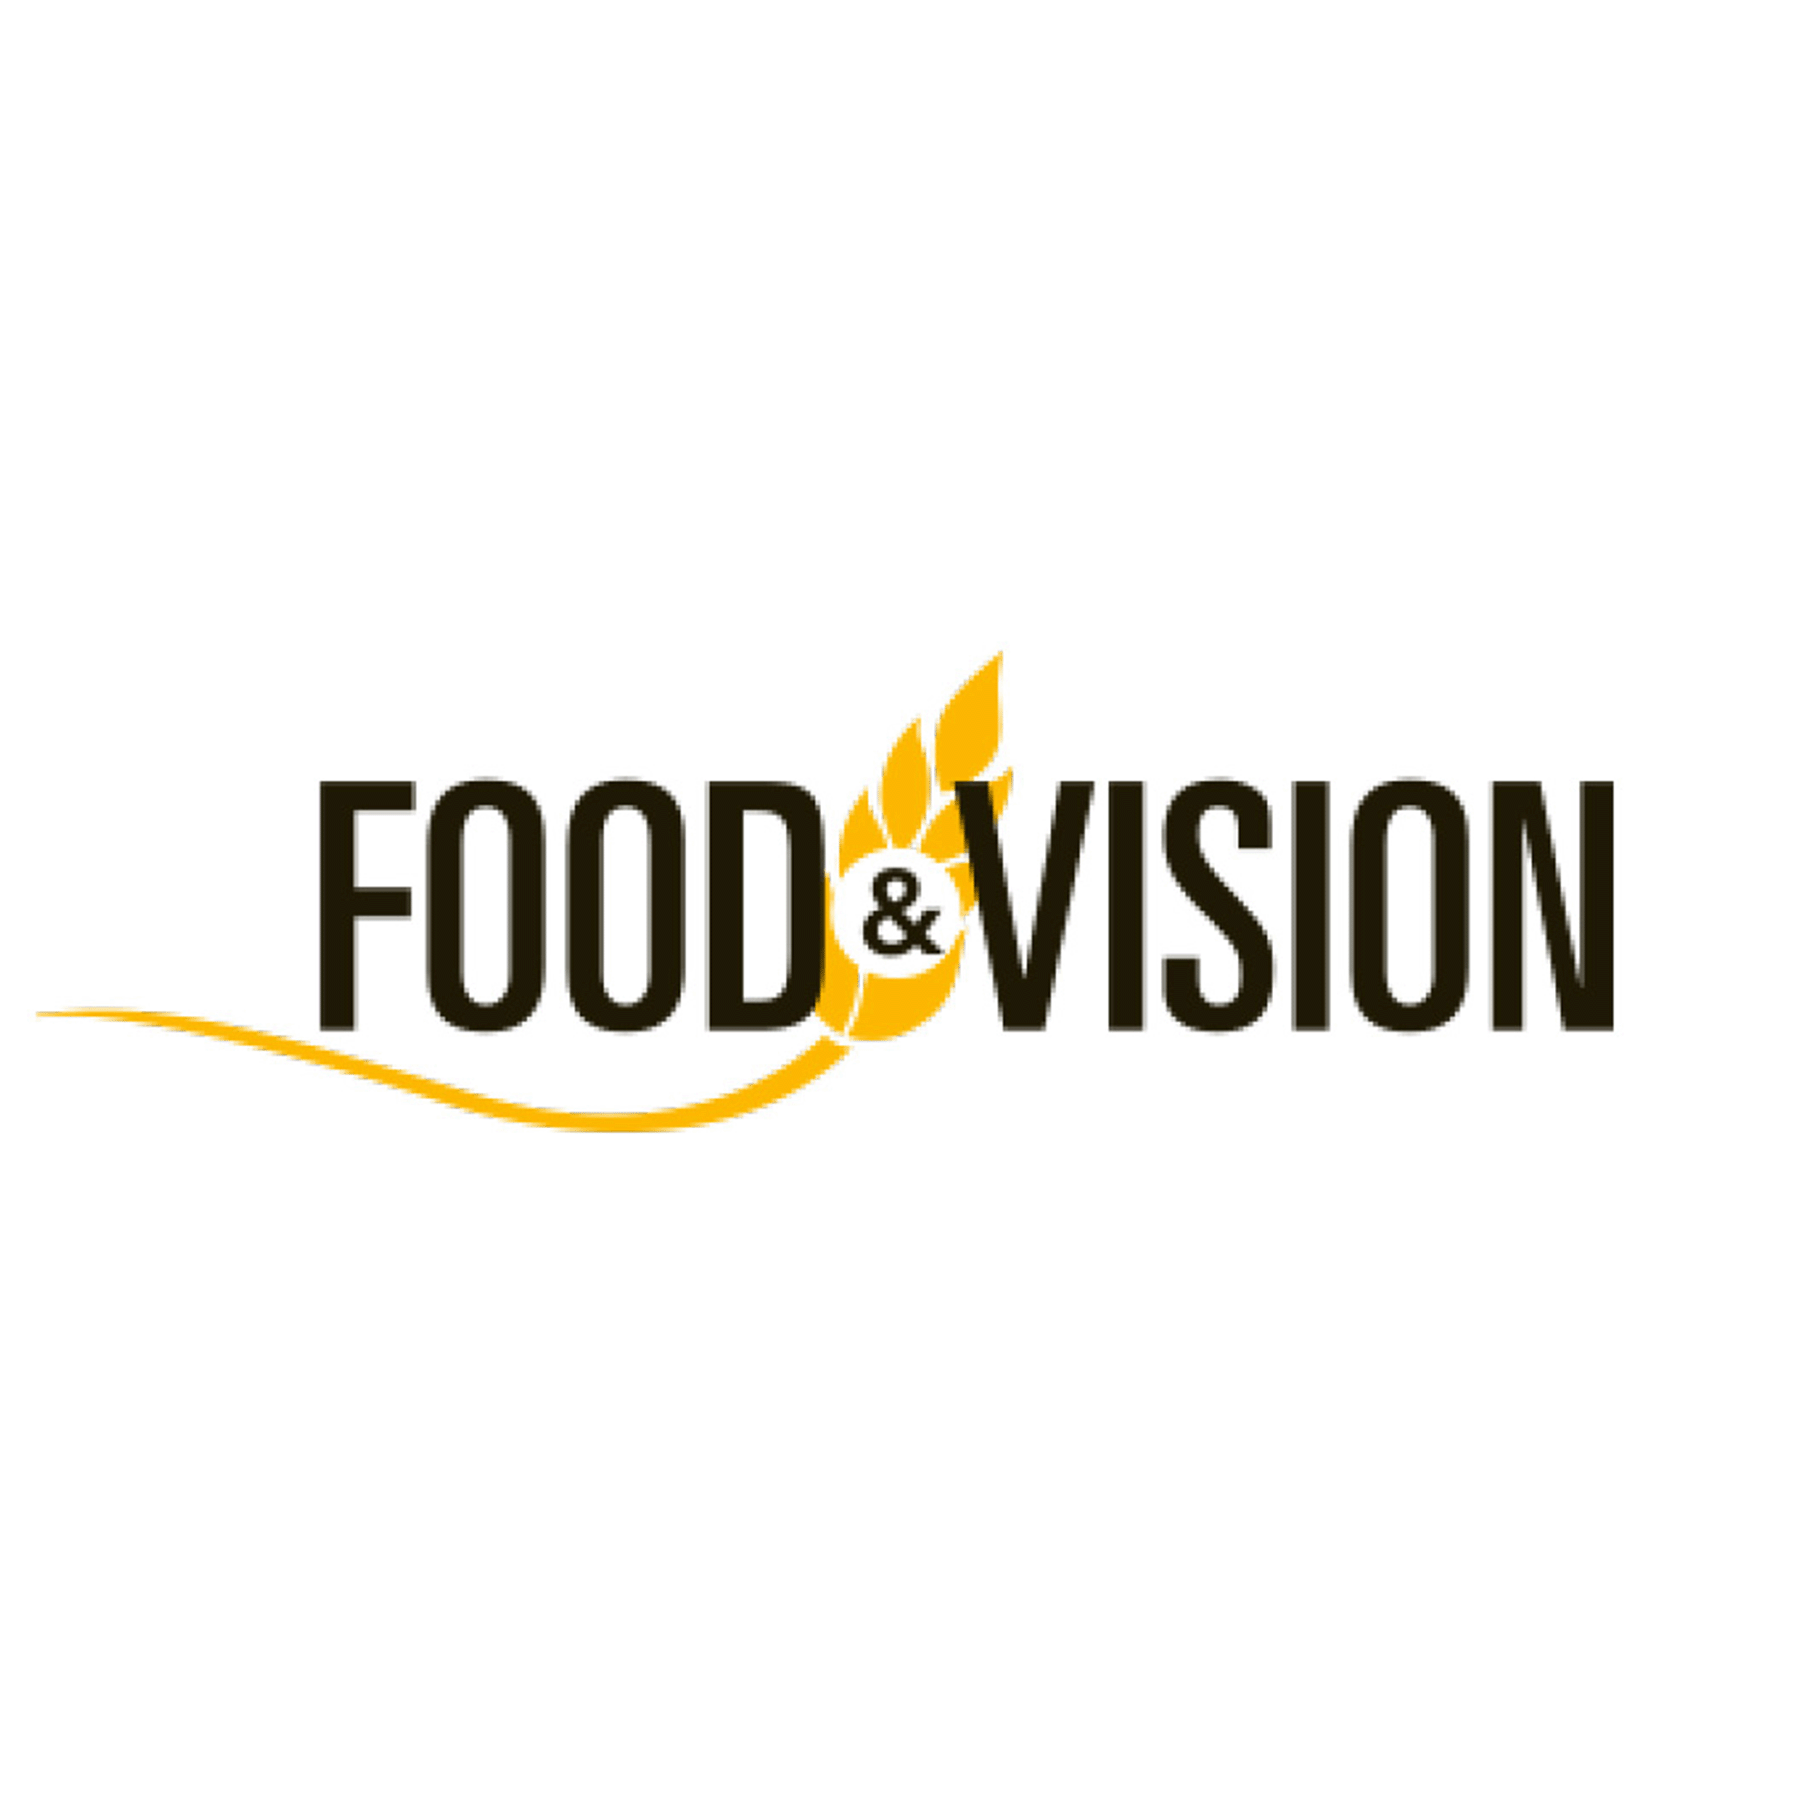 Food & Vision merk